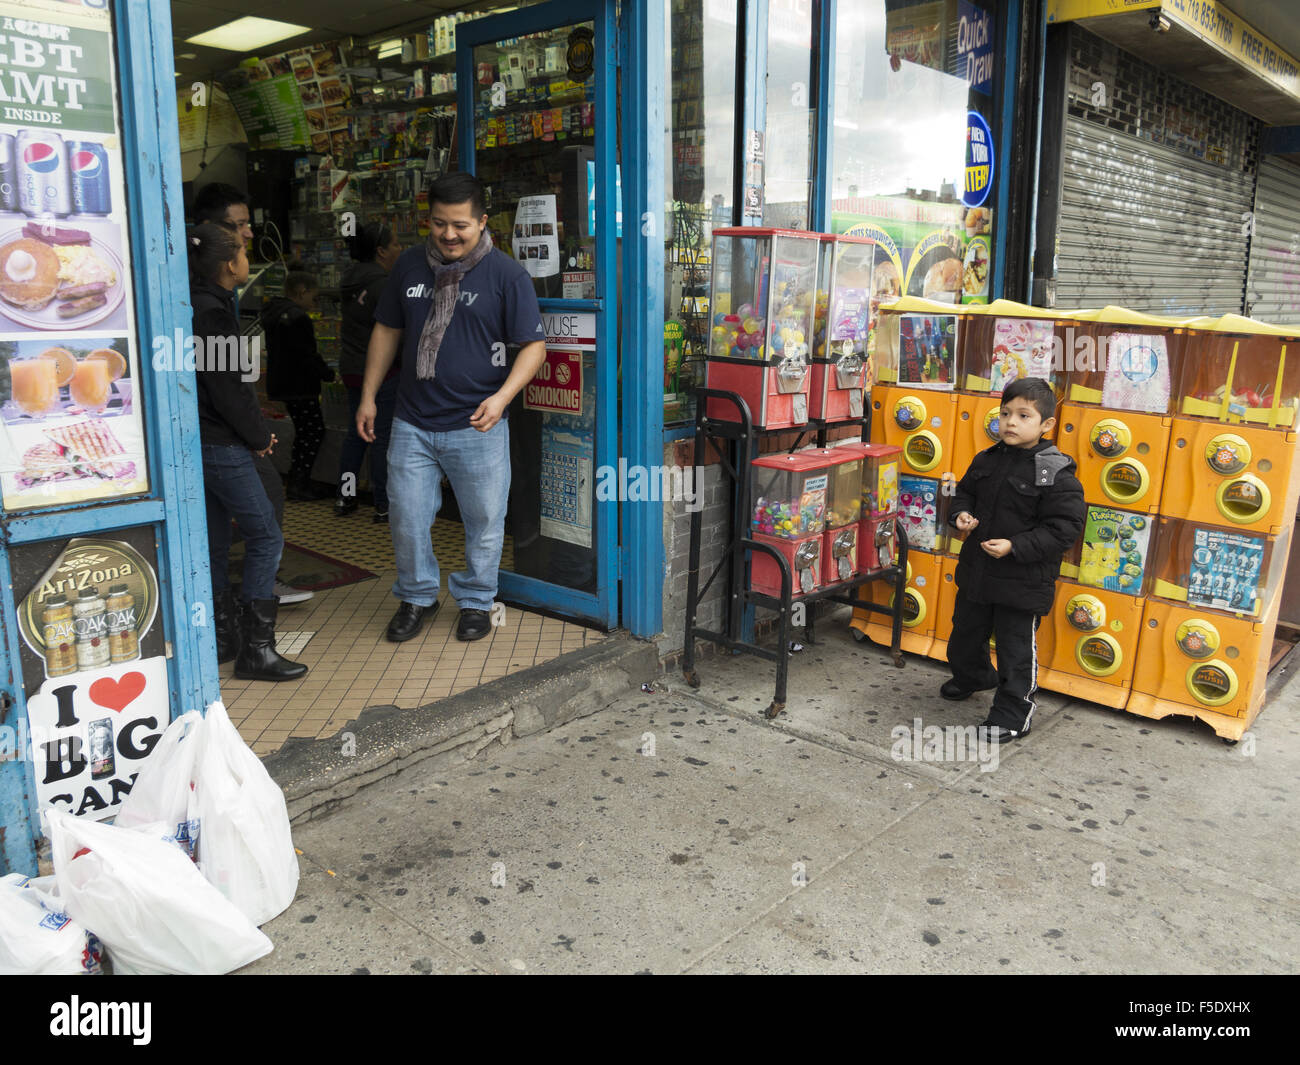 Les mexicains en face de bodega dans le Kensington article de Brooklyn, New York, 2015. Garçon porte le Jour des Morts maquillage visage. Banque D'Images